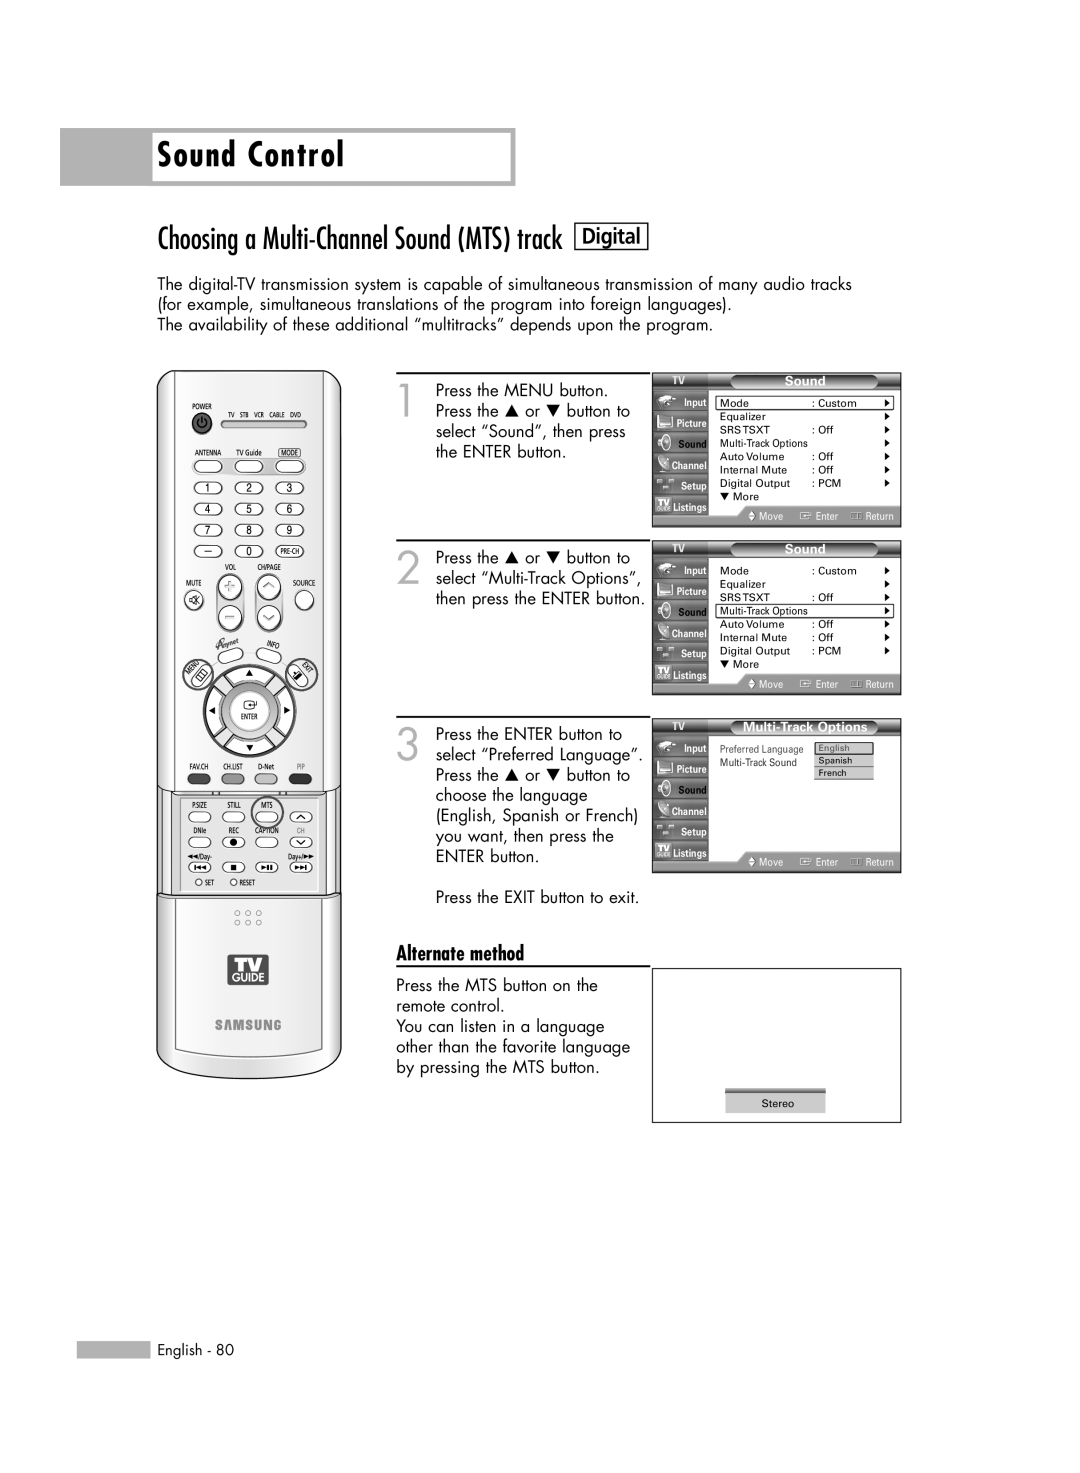 Samsung HL-R7178W, HL-R6178W, HL-R5678W Sound Control, Digital, Choosing a Multi-ChannelSound MTS track, Alternate method 